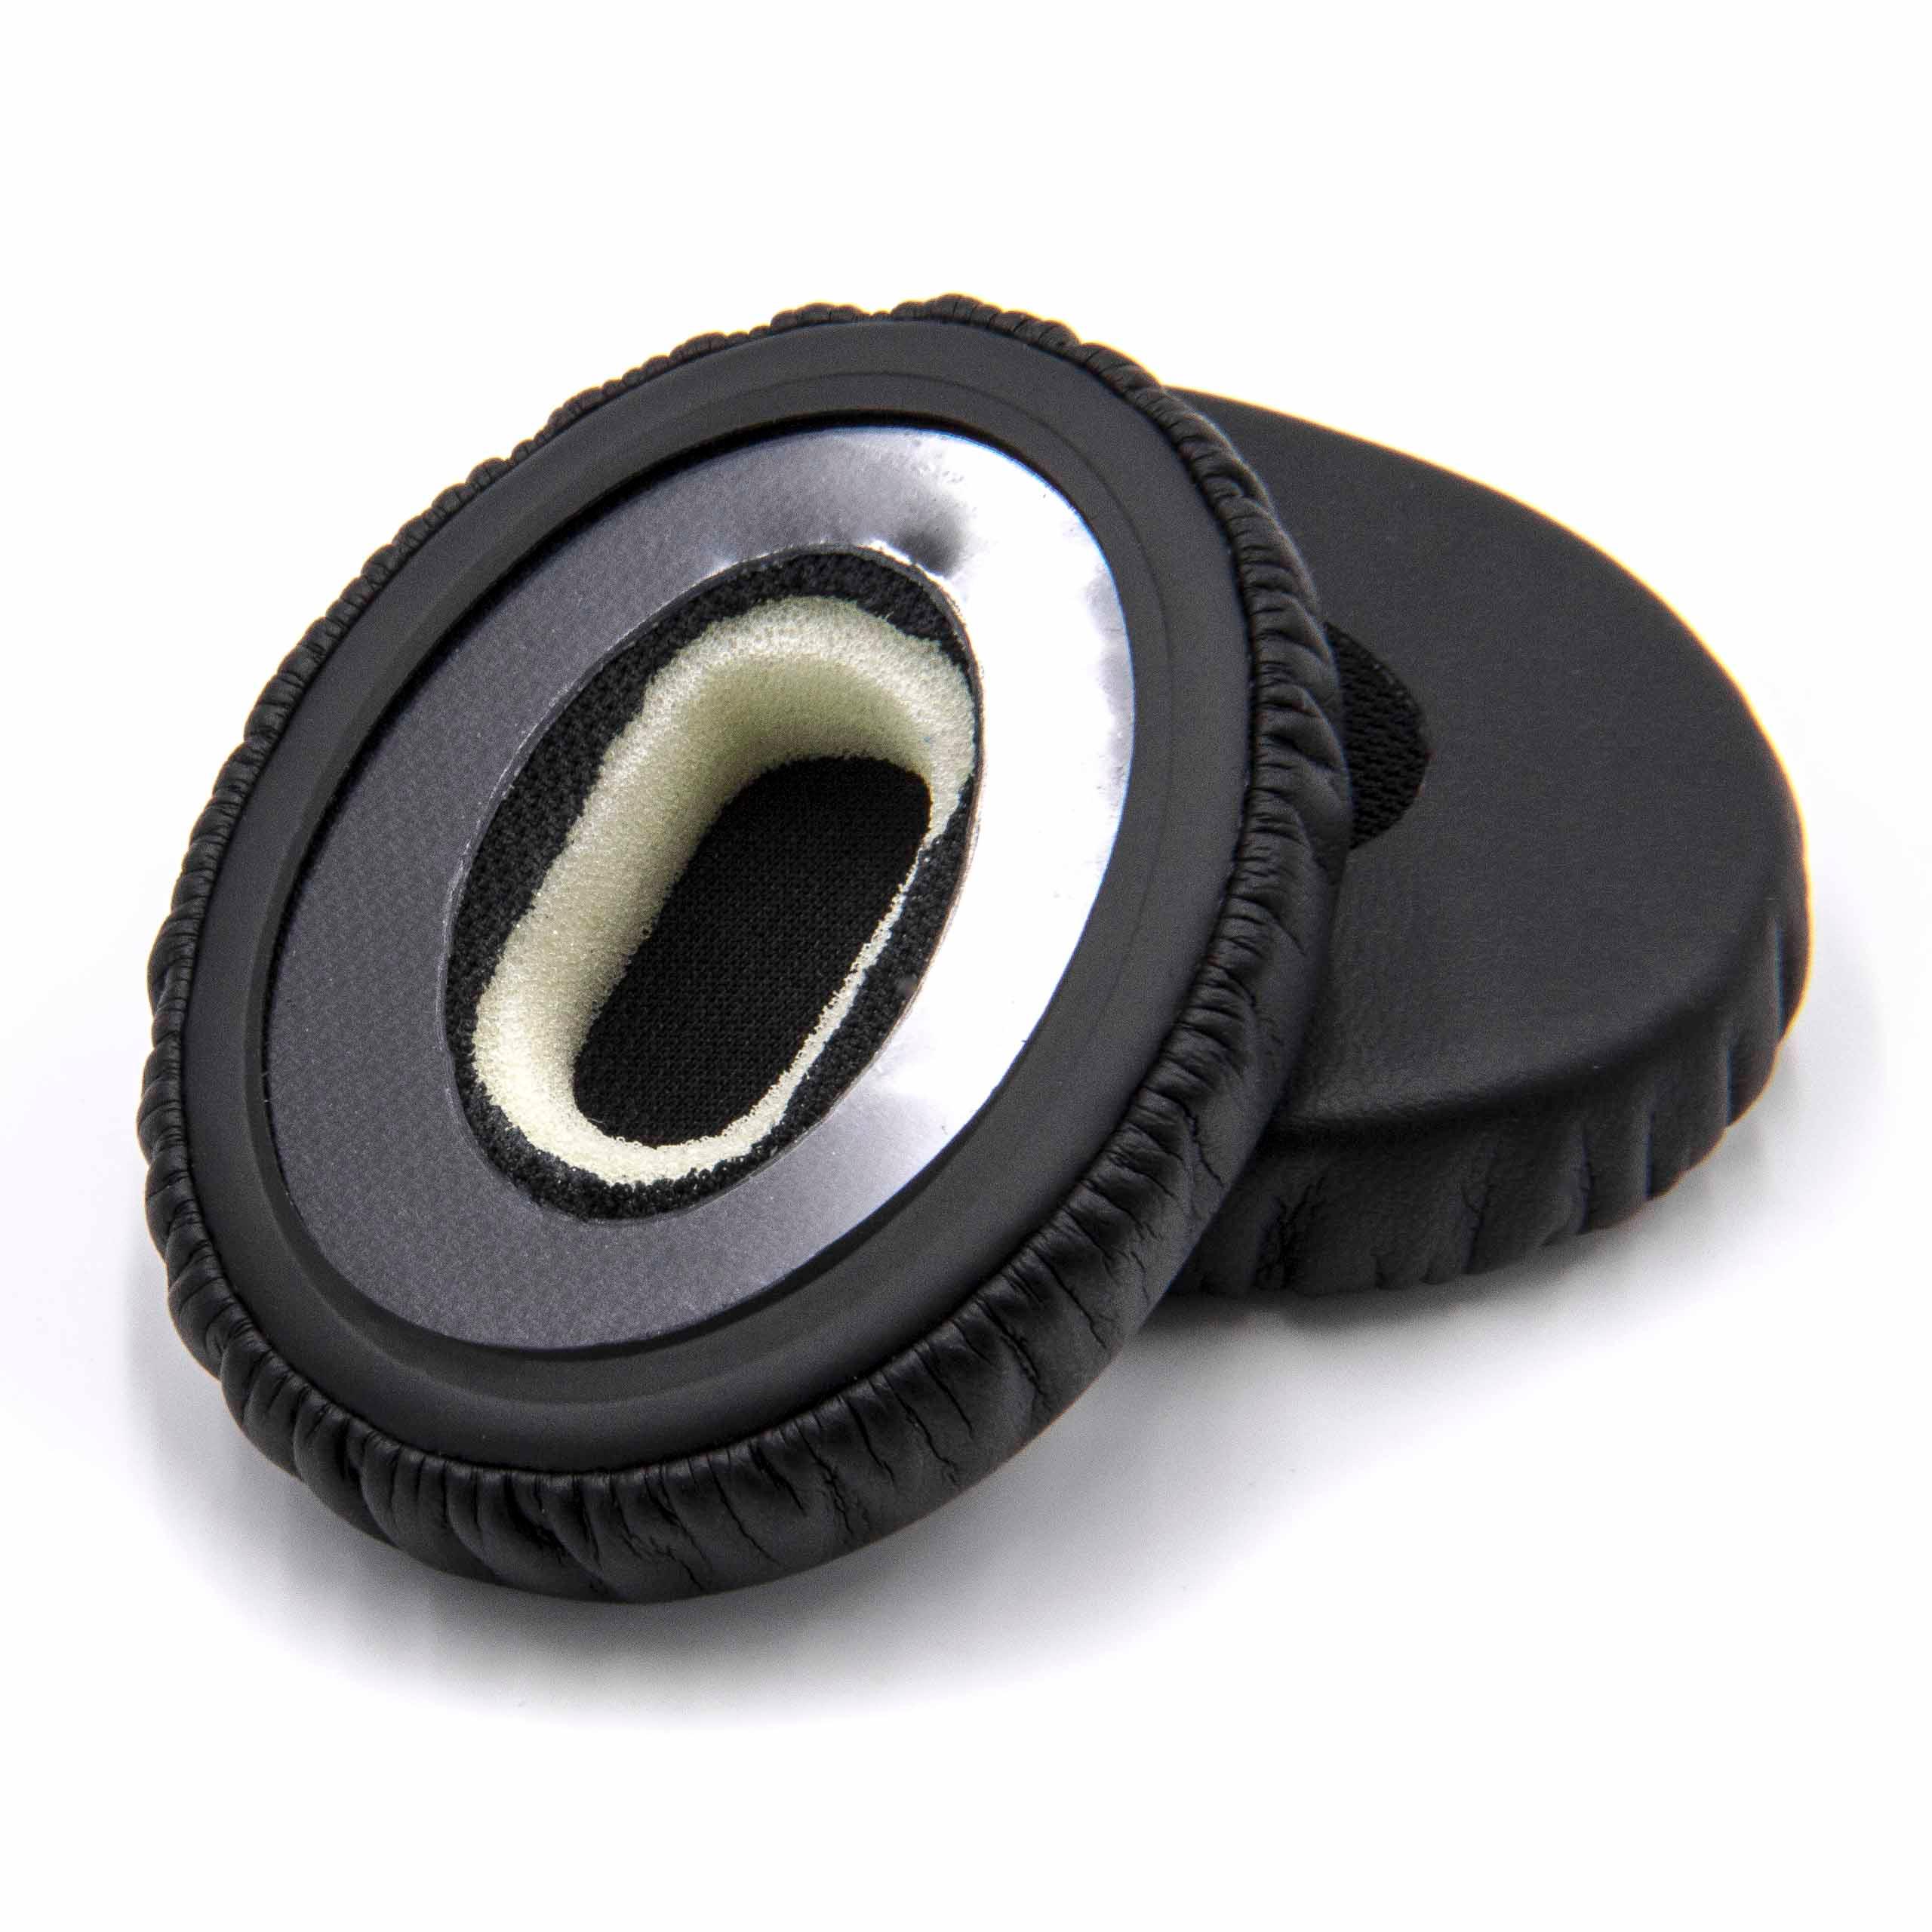 2x Ohrenpolster passend für Bose OnEar Kopfhörer u.a. - Synthesefaser, 5,6 cm Außendurchmesser, Schwarz